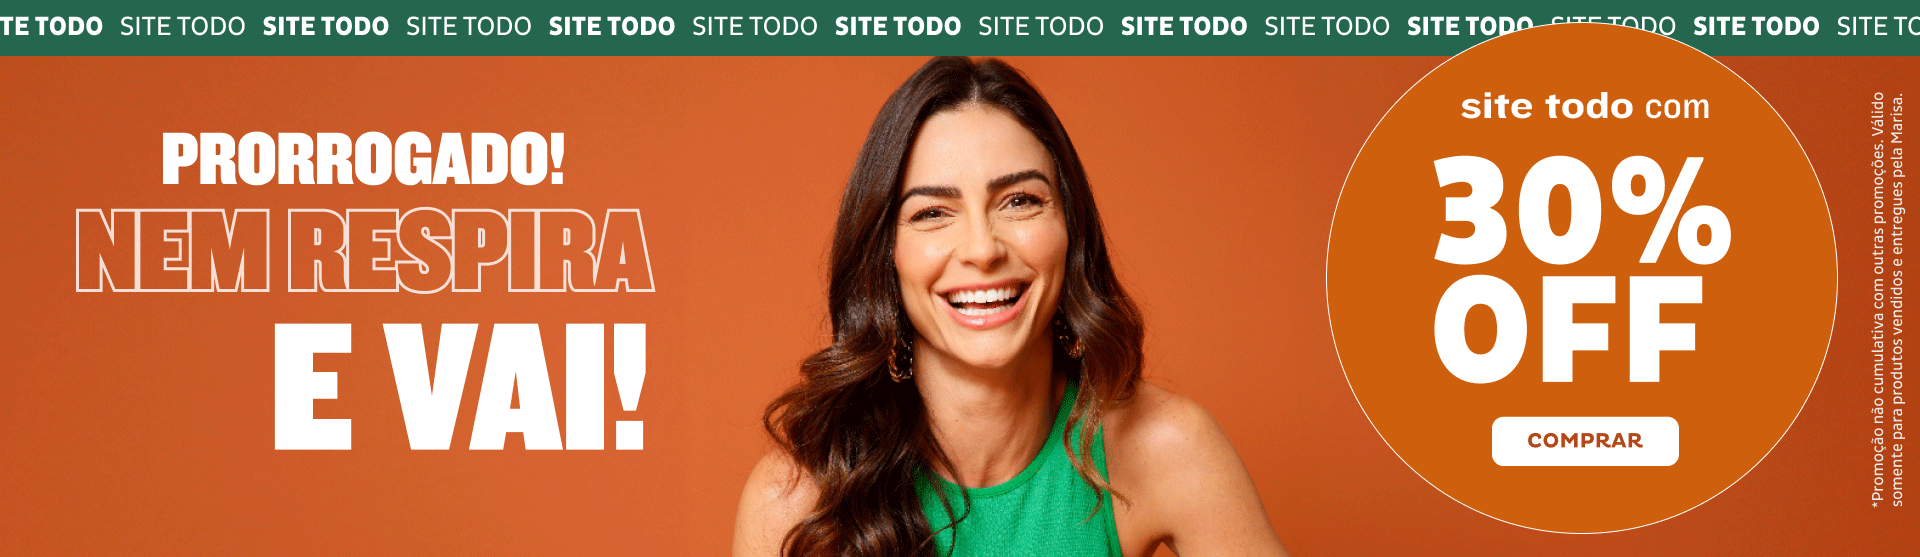 Site TODO com 30%OFF! Aproveite!!